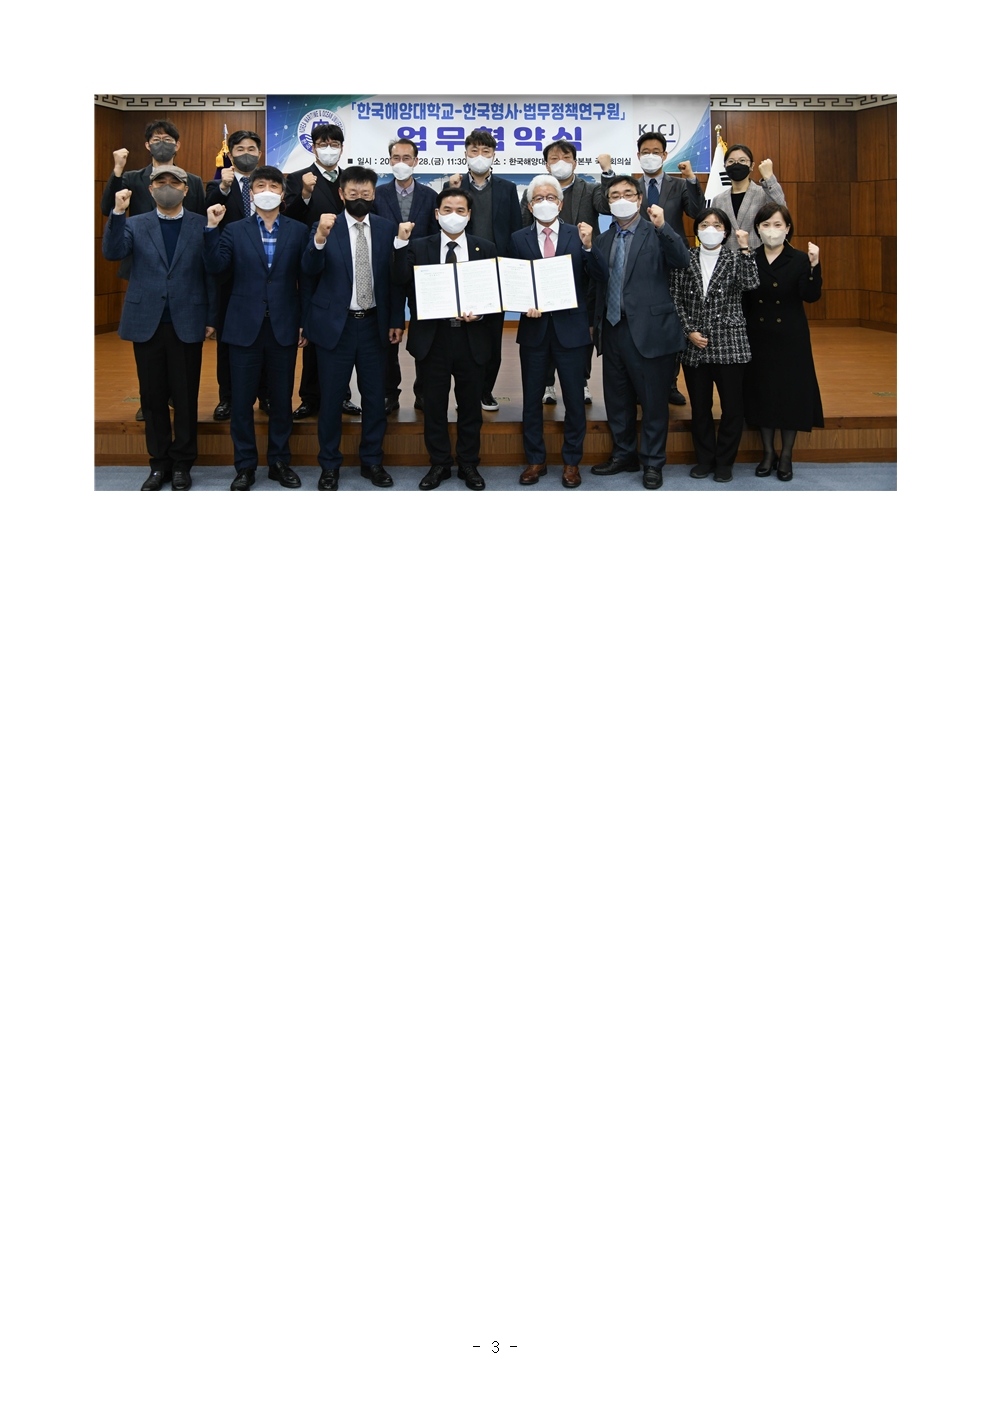 별첨1. 한국형사·법무정책연구원-한국한양대학교 업무협약 체결식 단체사진